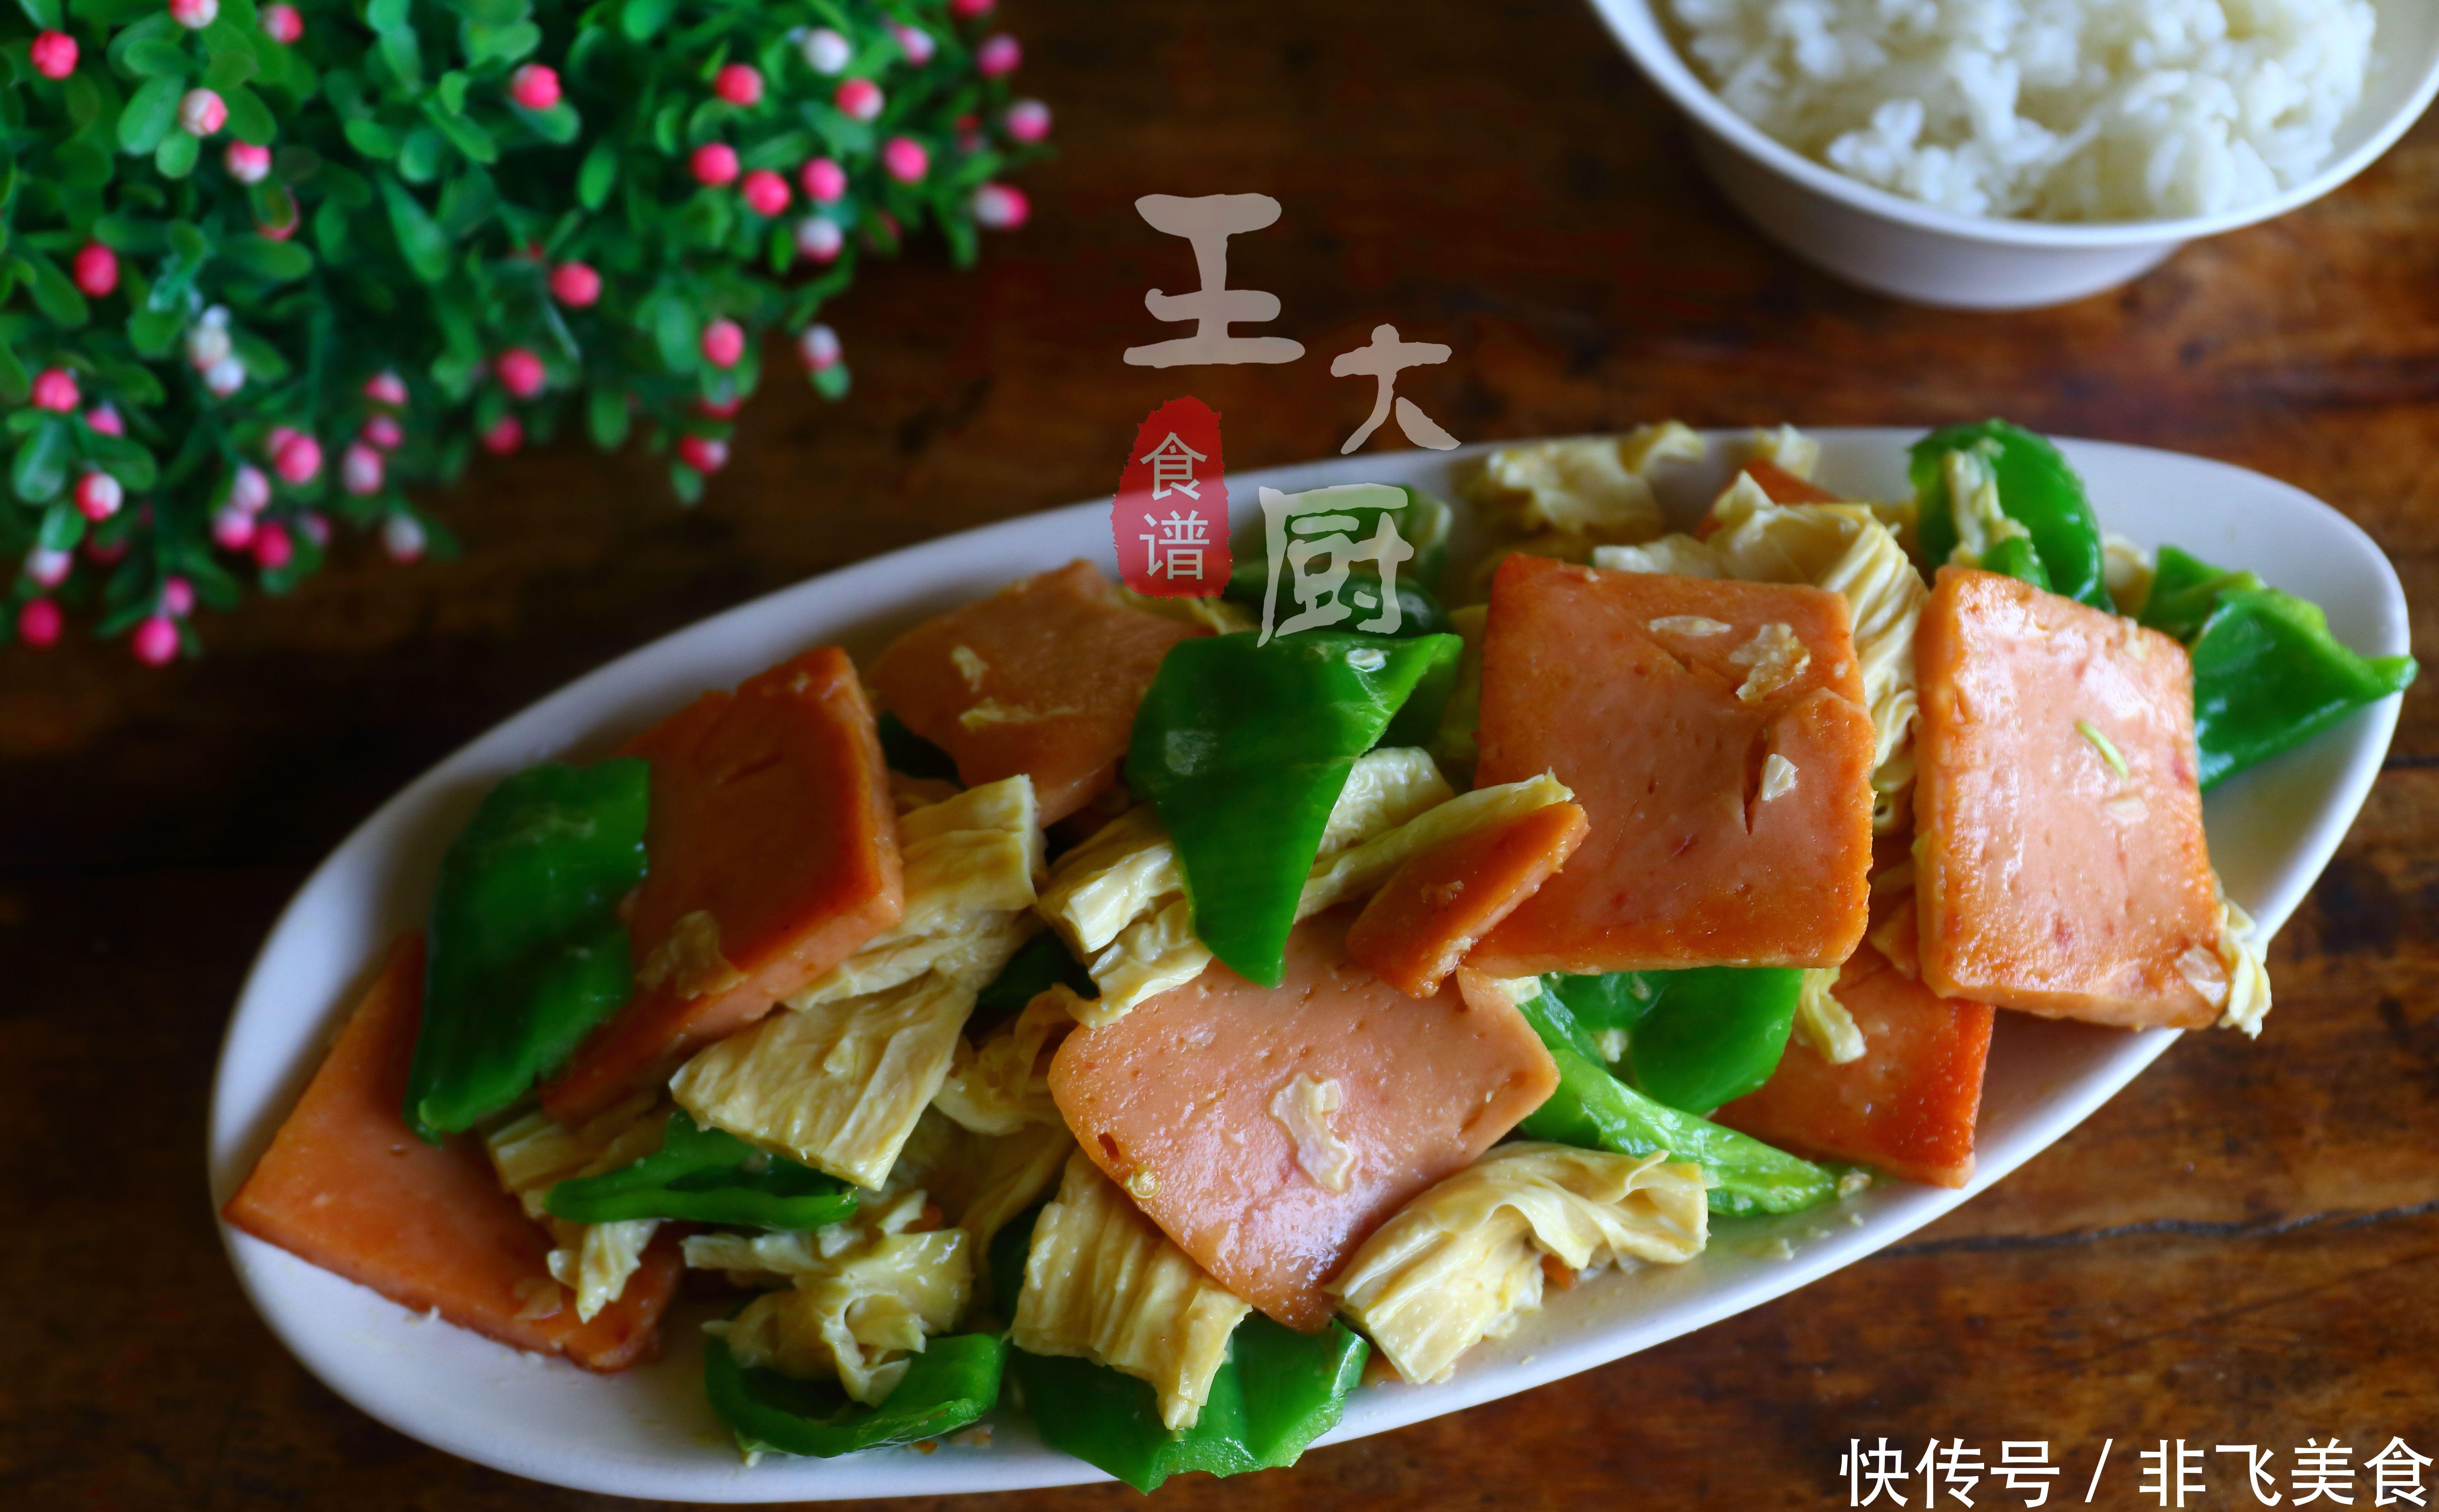 腐竹炒午餐肉的家常做法,简单快捷又好吃,上桌